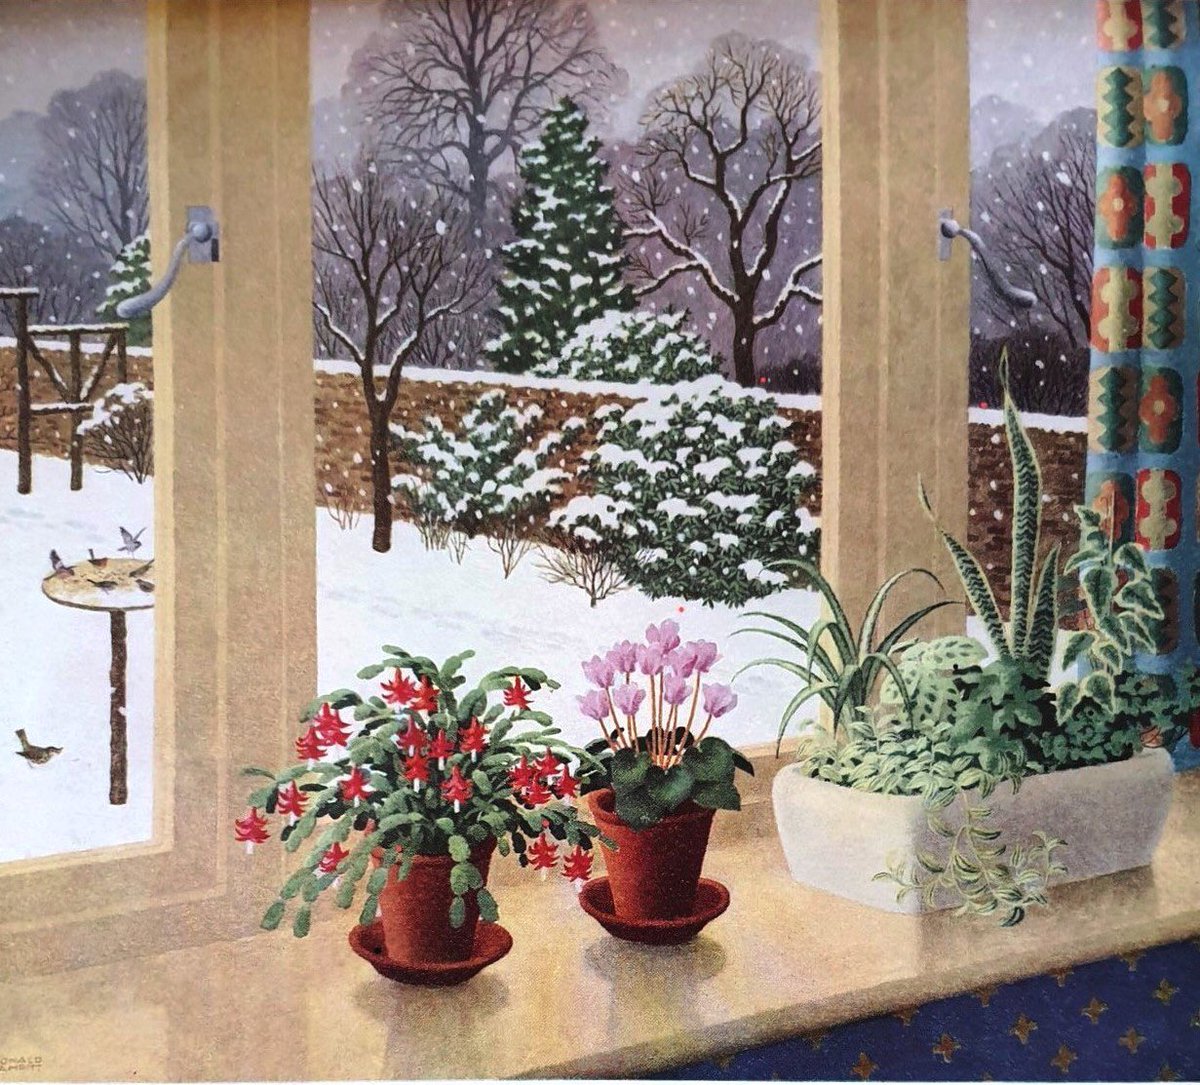 Other work by the Ladybird artists, part 113.
‘December’ (1958)
#RonaldLampitt